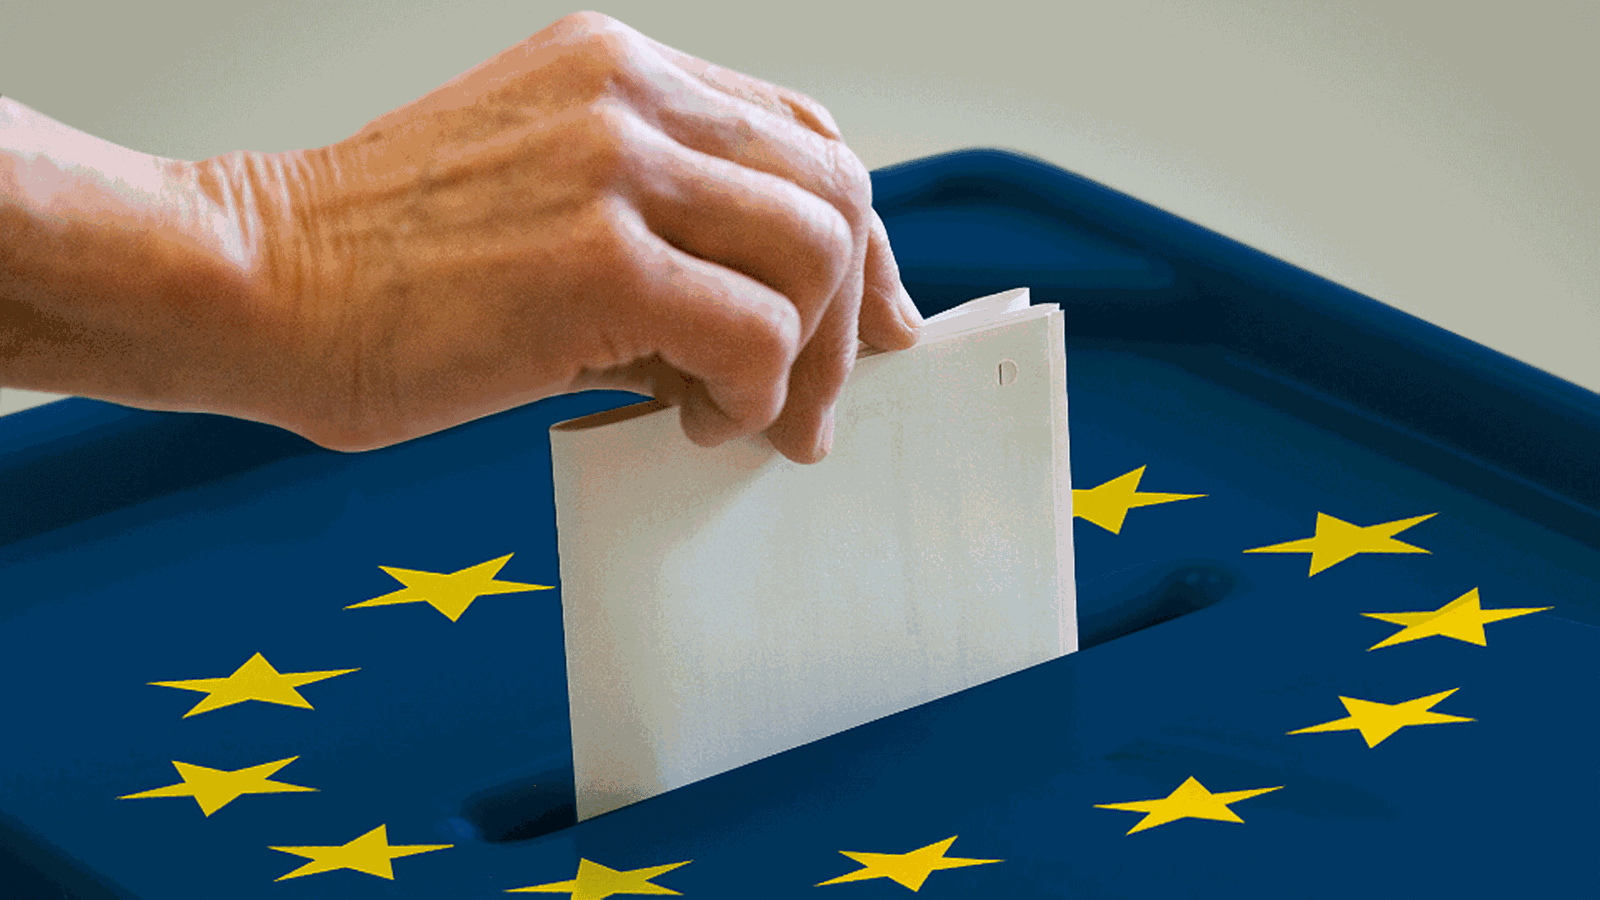 Europawahl 2019 - Ergebnisse und Wahlkampf in NRW - Europawahl